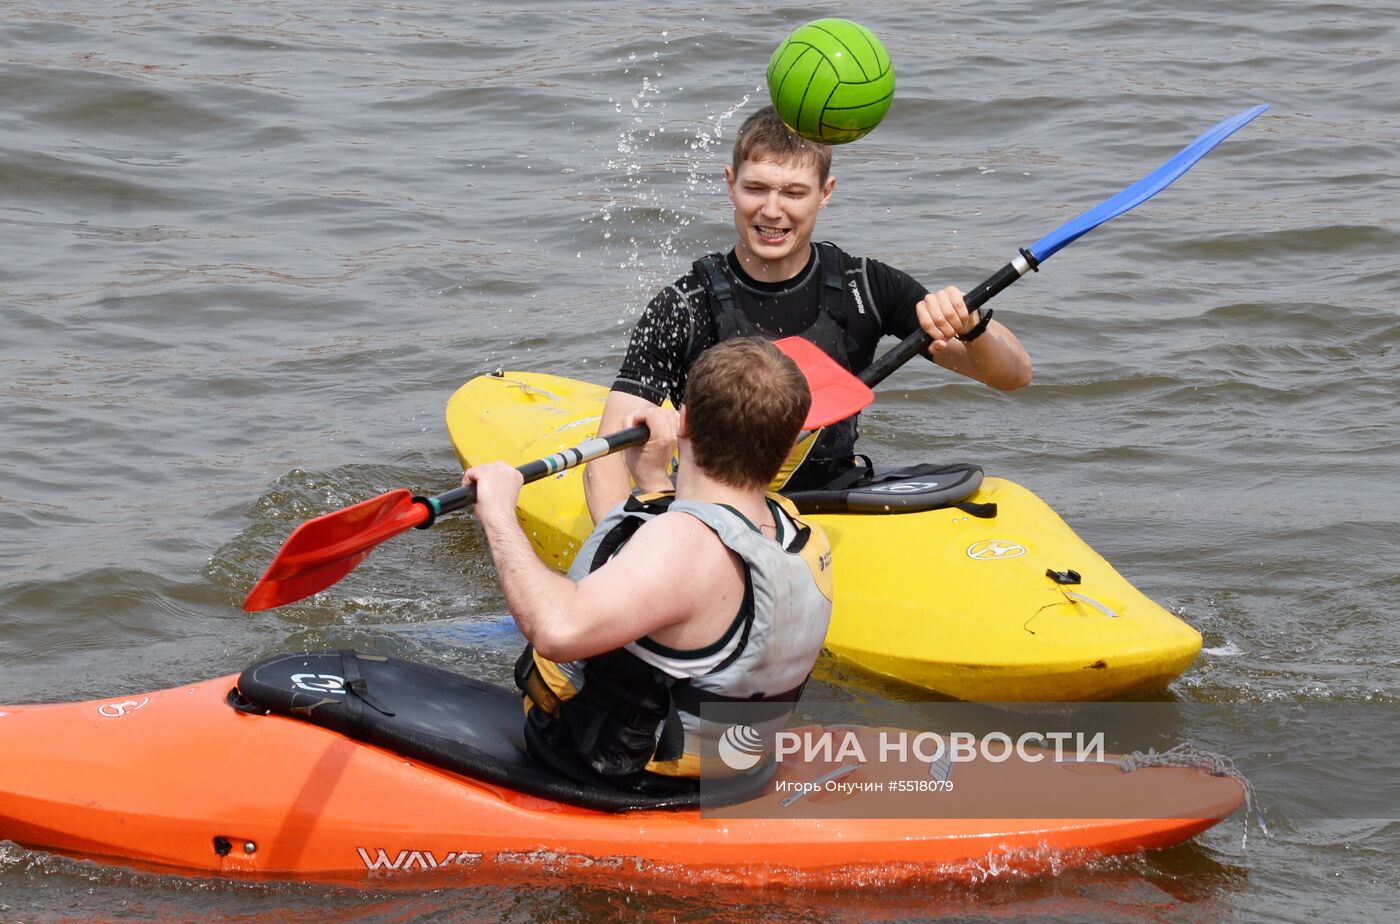 Открытие летнего сезона Aquafest 2018 в Хабаровске